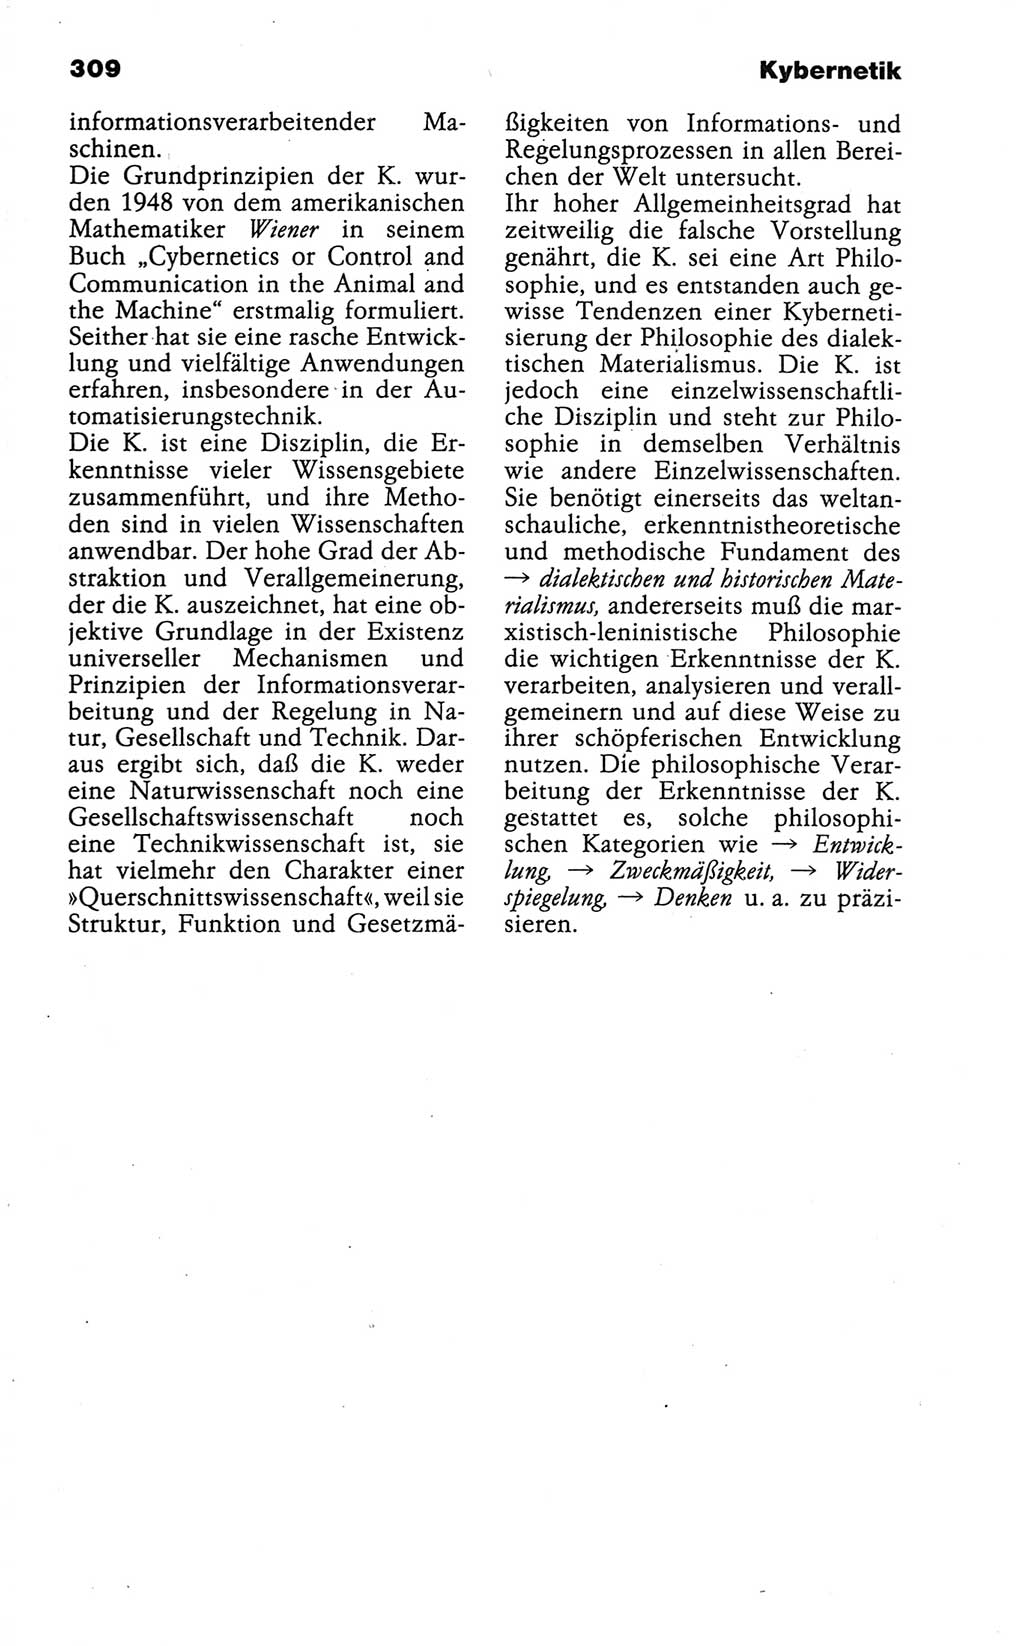 Wörterbuch der marxistisch-leninistischen Philosophie [Deutsche Demokratische Republik (DDR)] 1986, Seite 309 (Wb. ML Phil. DDR 1986, S. 309)